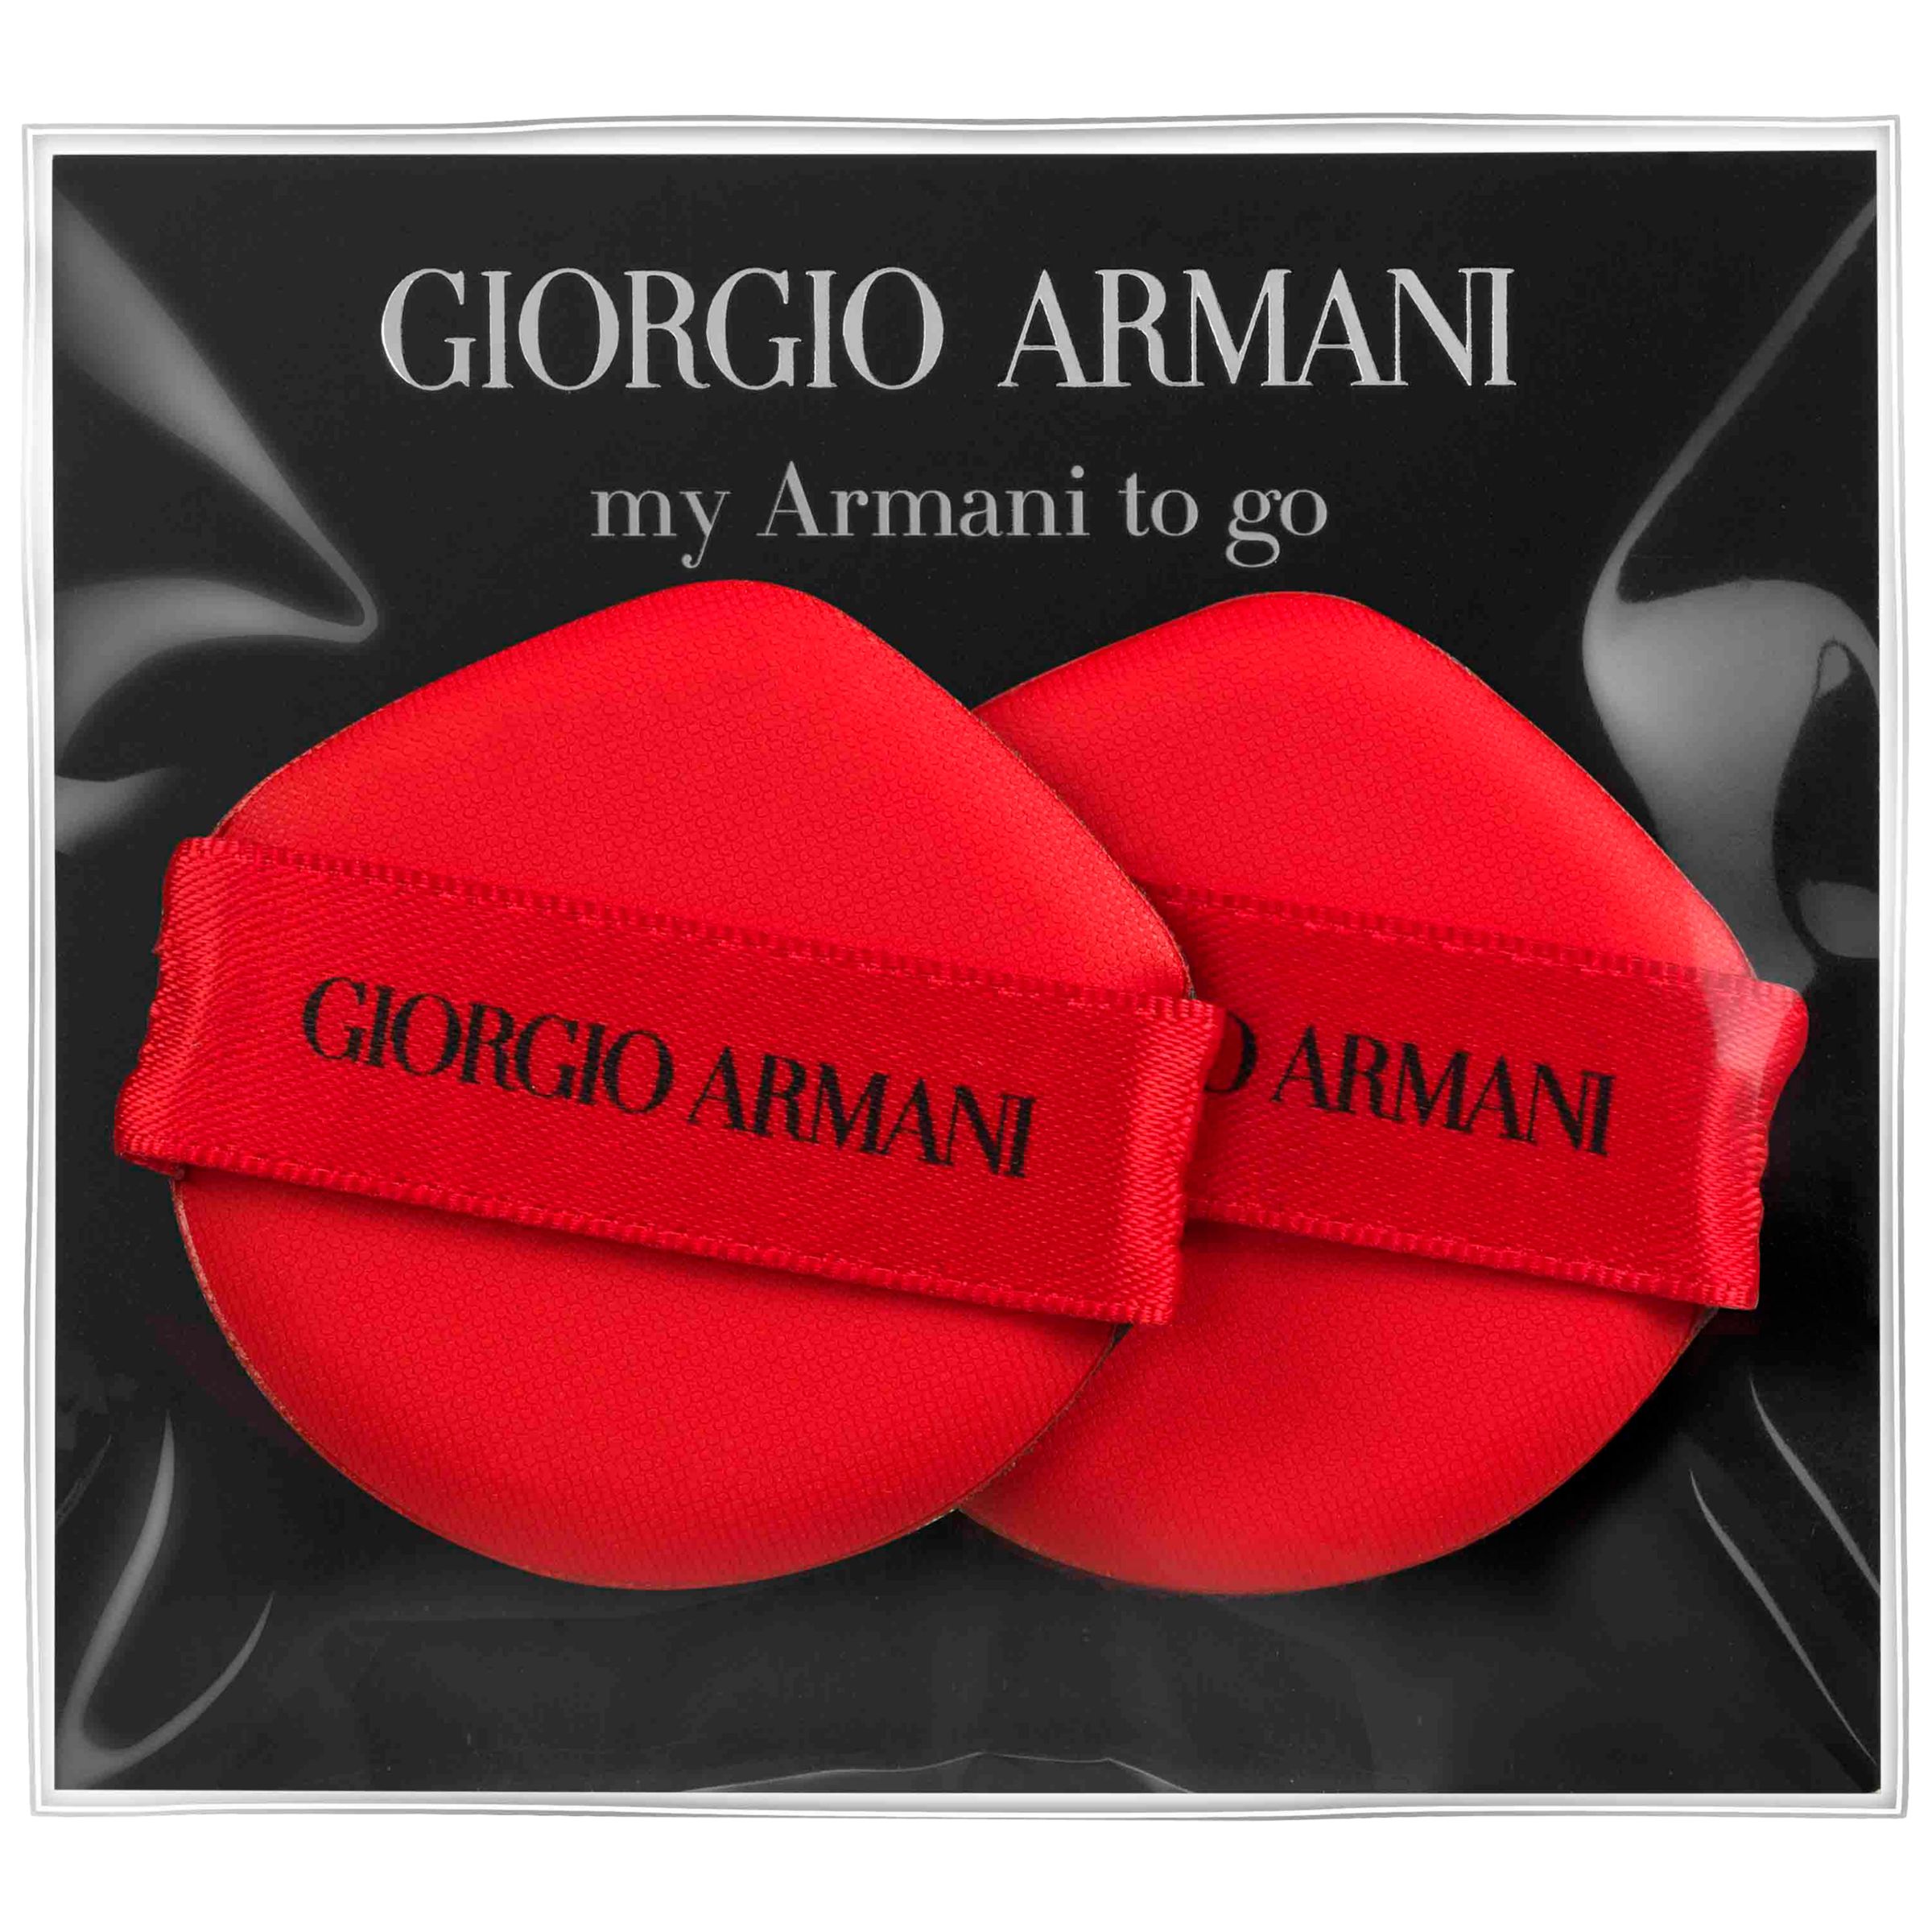 giorgio armani to go cushion